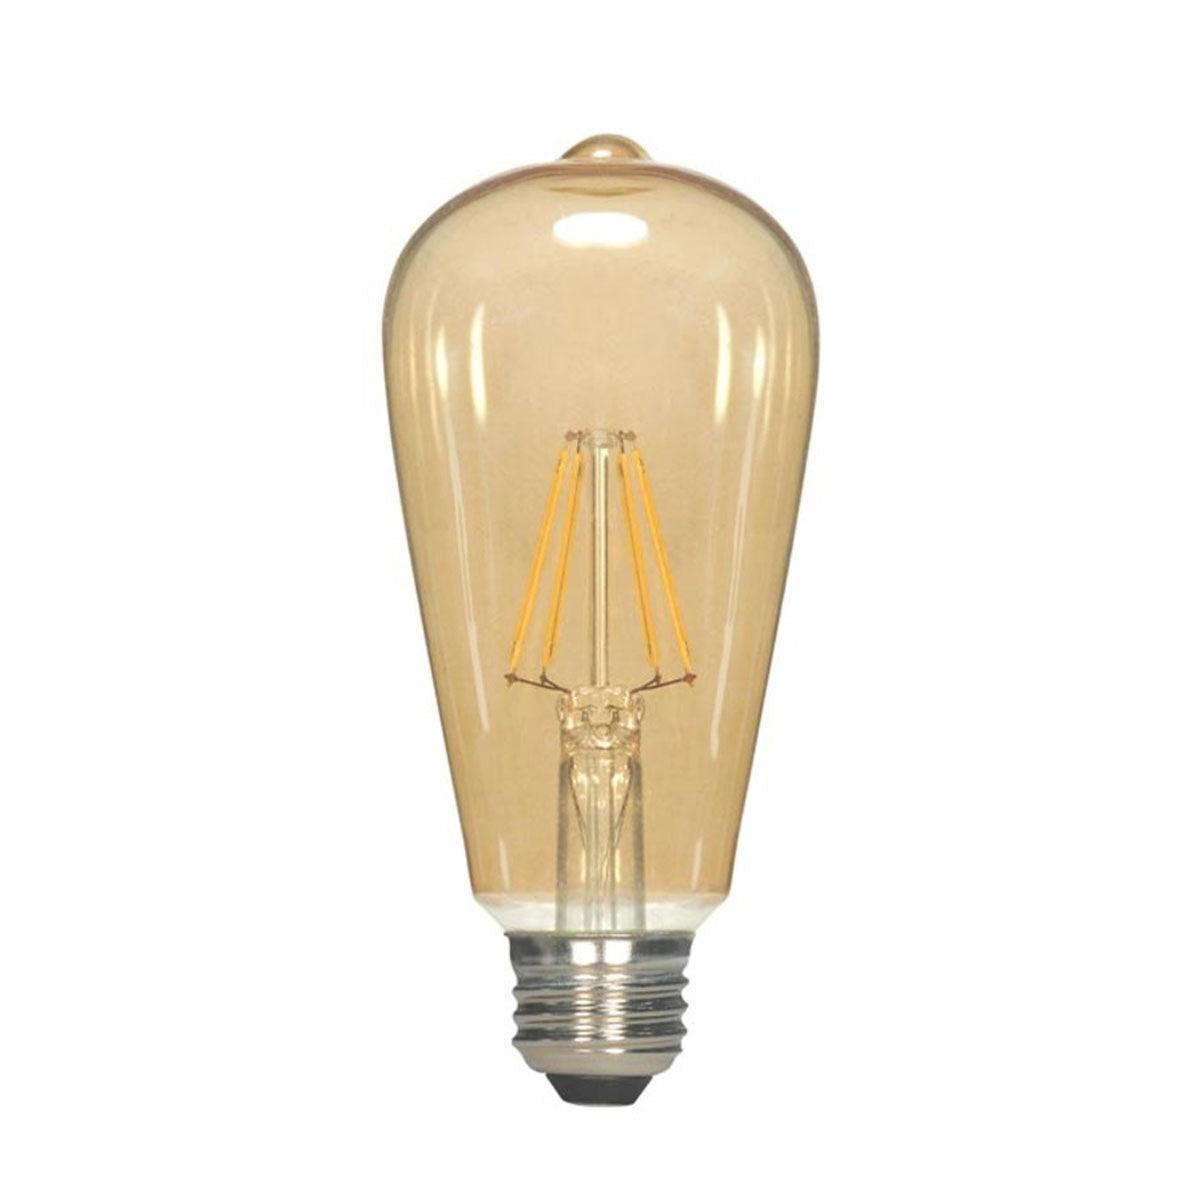 LED ST19 Straight Tapered Bulb, 5 Watt, 380 Lumens, 2000K, E26 Medium Base, Amber Finish - Bees Lighting